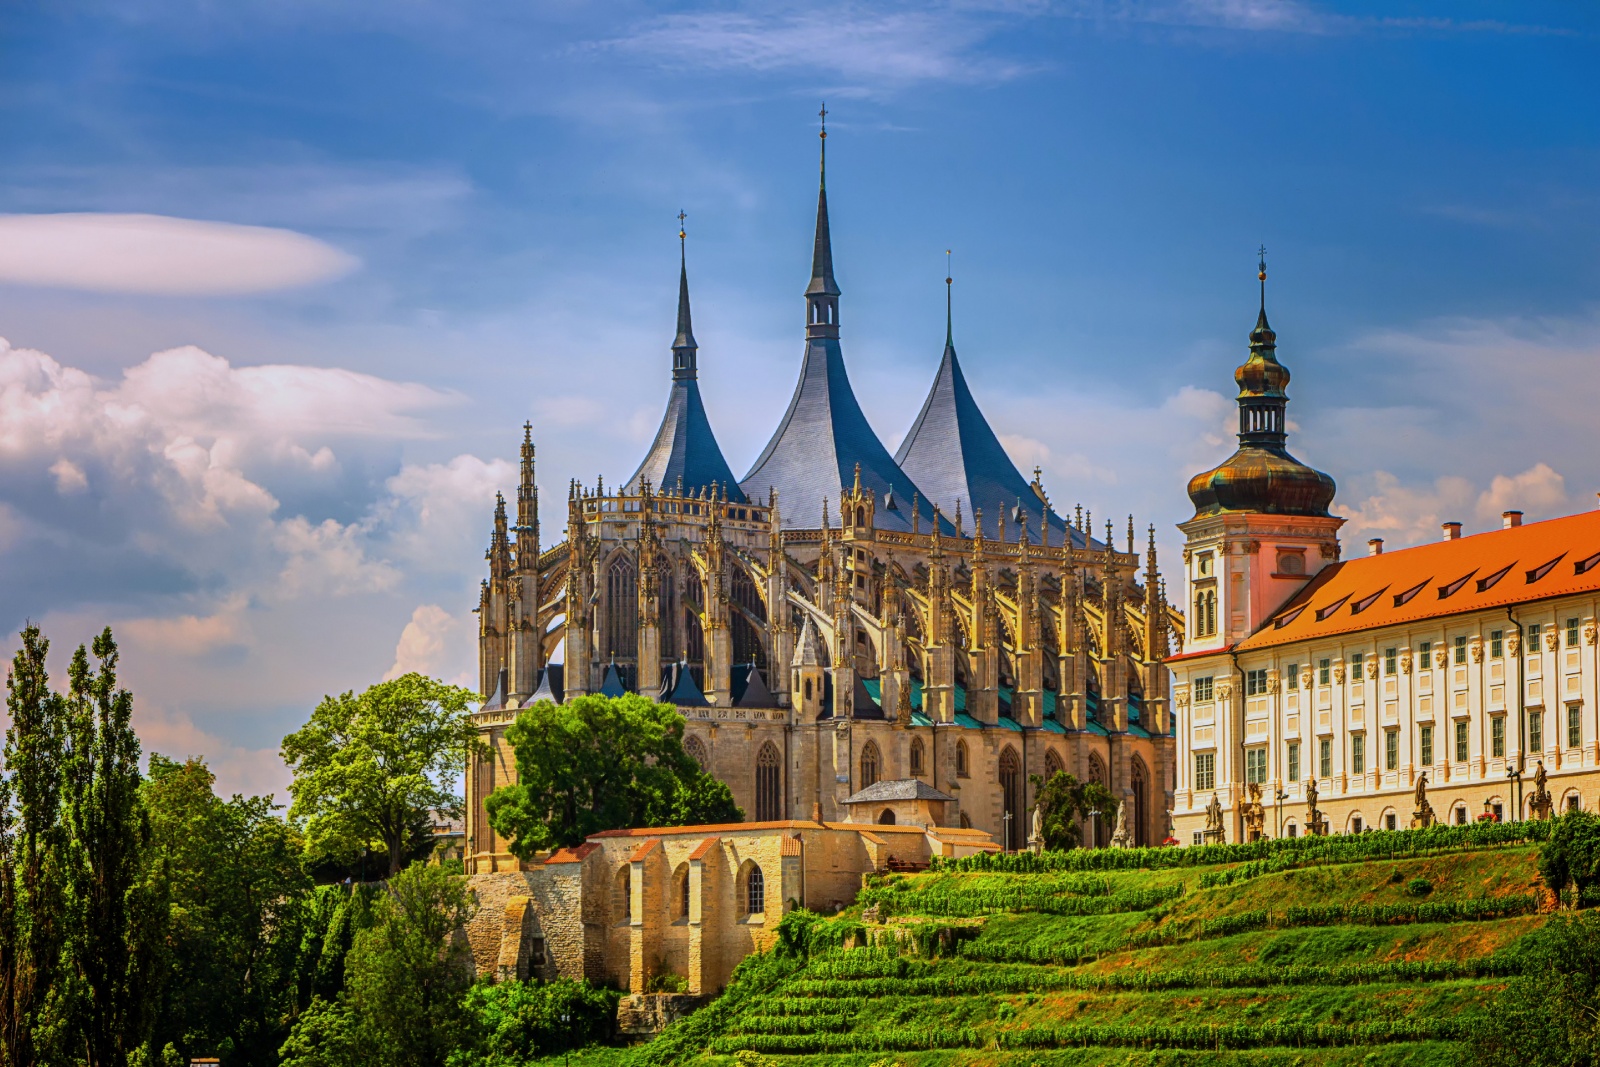 Живописный городок Кутна Гора, внесенный в список мирового наследства ЮНЕСКО, расположен в 60 километрах от Праги